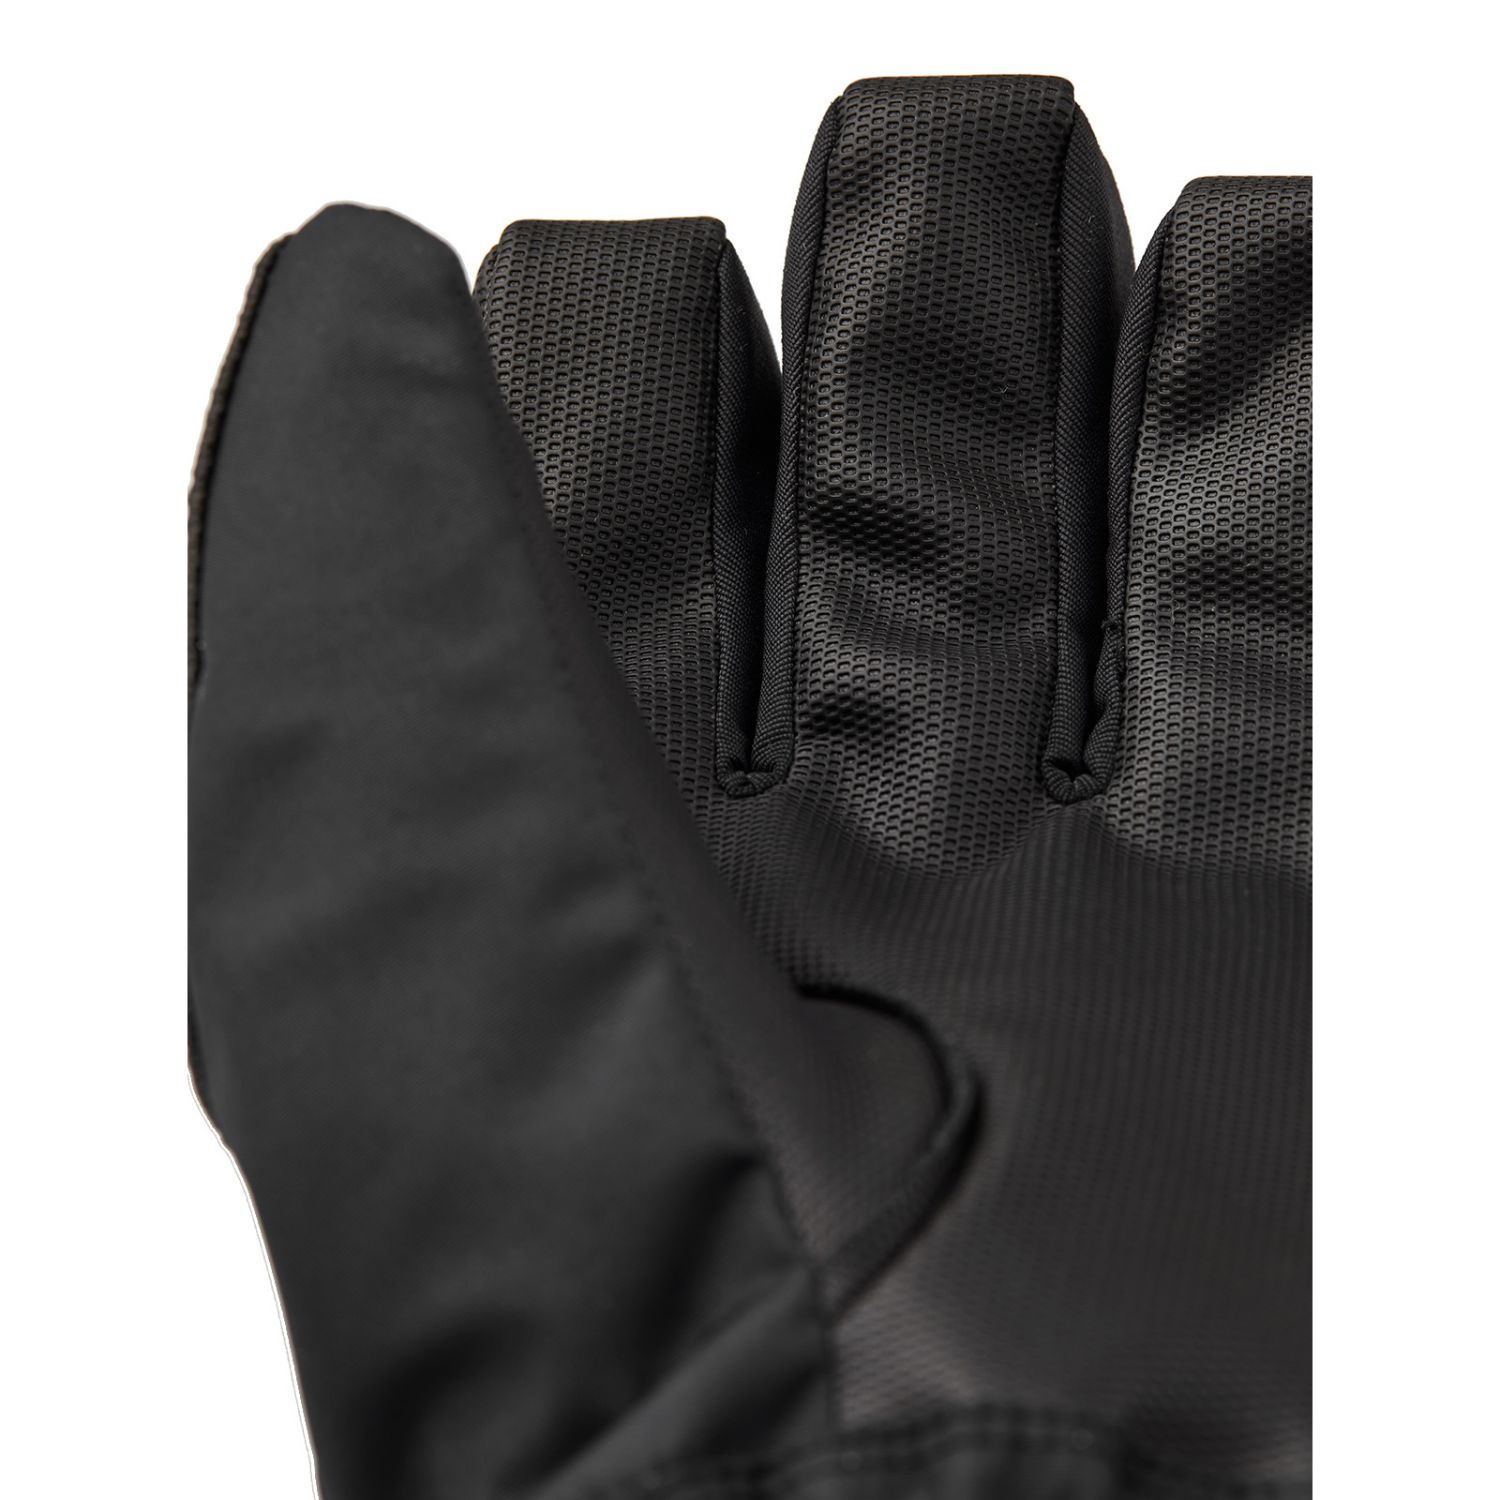 Hestra Gore-Tex Gauntlet gants de ski, junior, noir